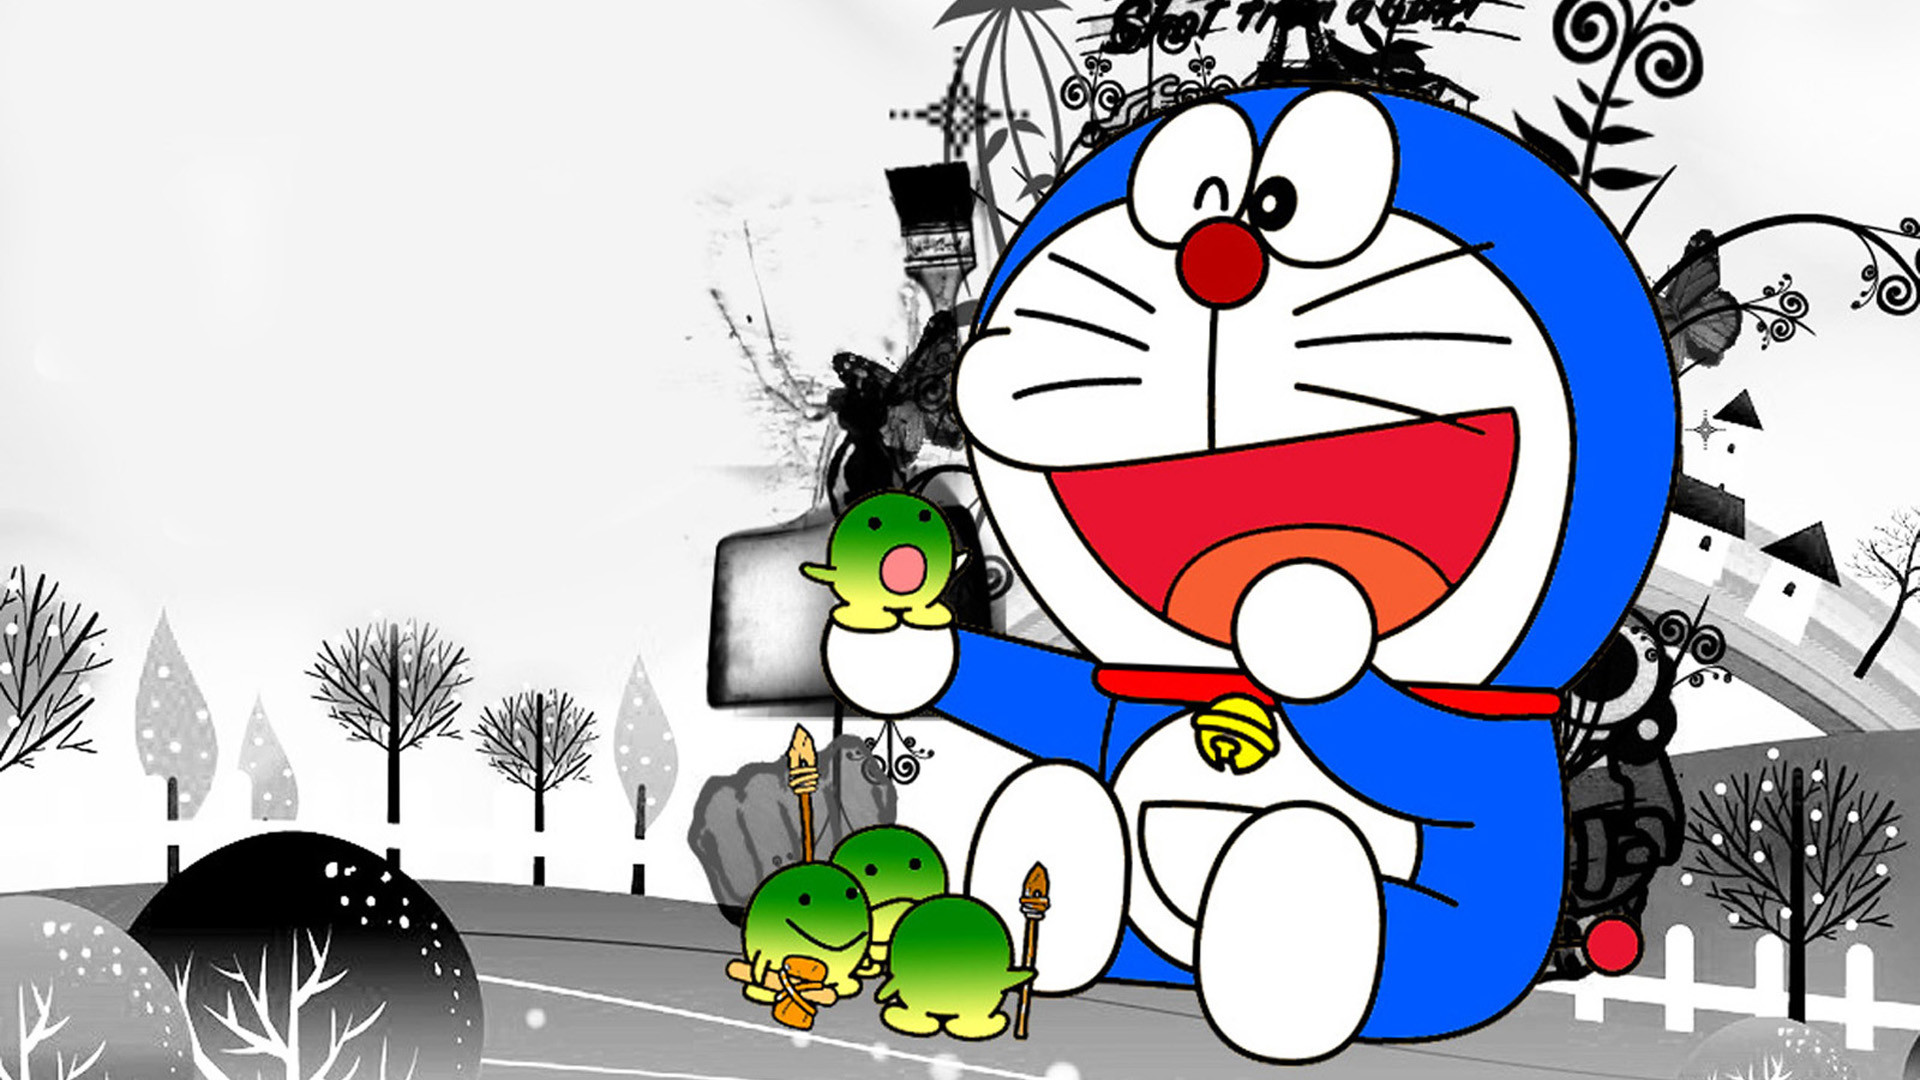 Hình nền Doraemon và bạn bè: Cùng nghía qua bức hình nền Doraemon và bạn bè đáng yêu, khéo léo đan xen sự vui tươi và sự đáng nhớ, tạo nên một tổ hợp thật hoàn hảo và đáng yêu.